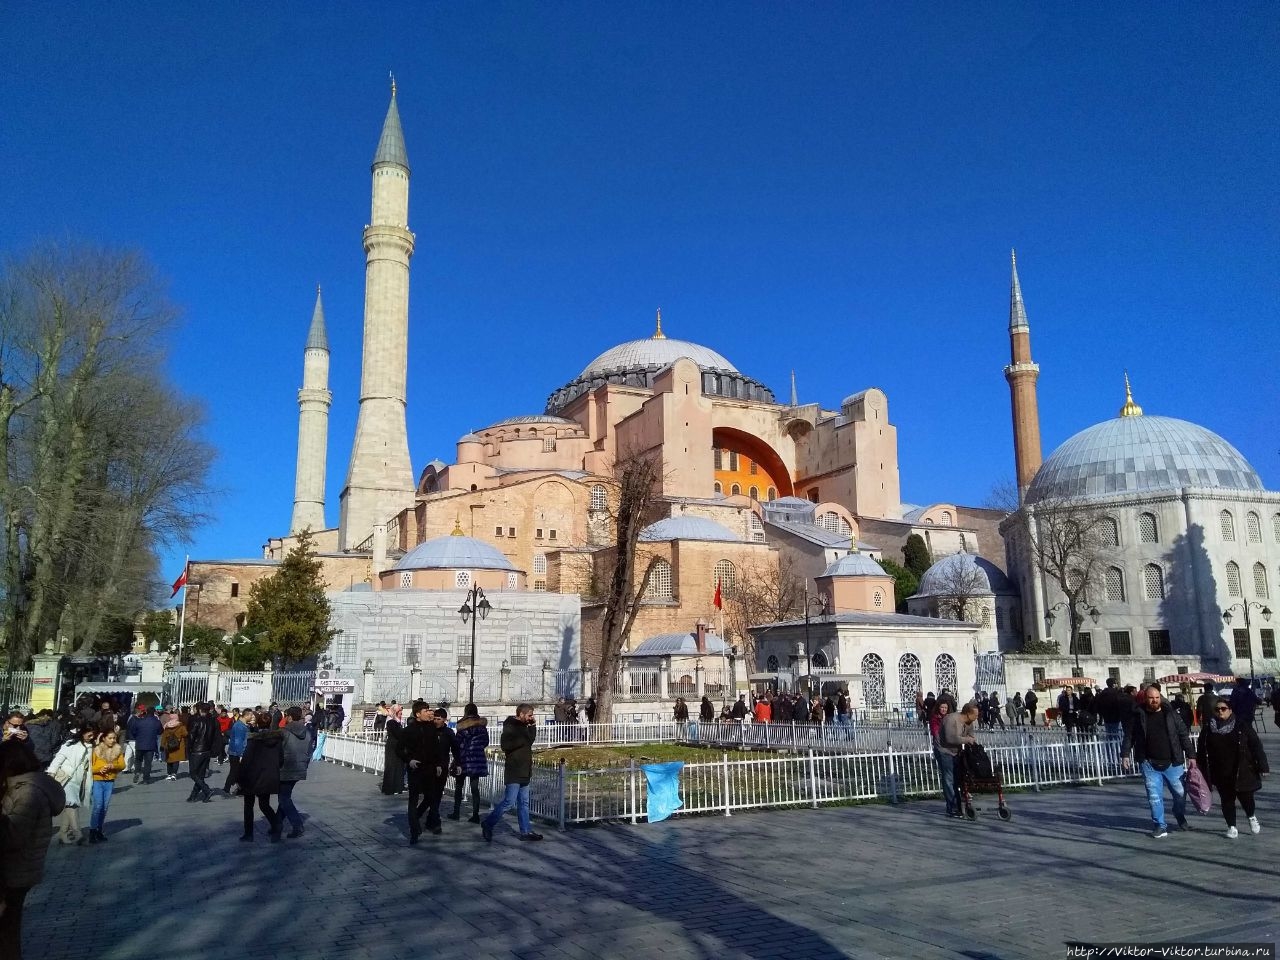 Цистерны собора Святой Софии и дворца Топкапы / Cisterns of Hagia Sophia and Topkapi Palace